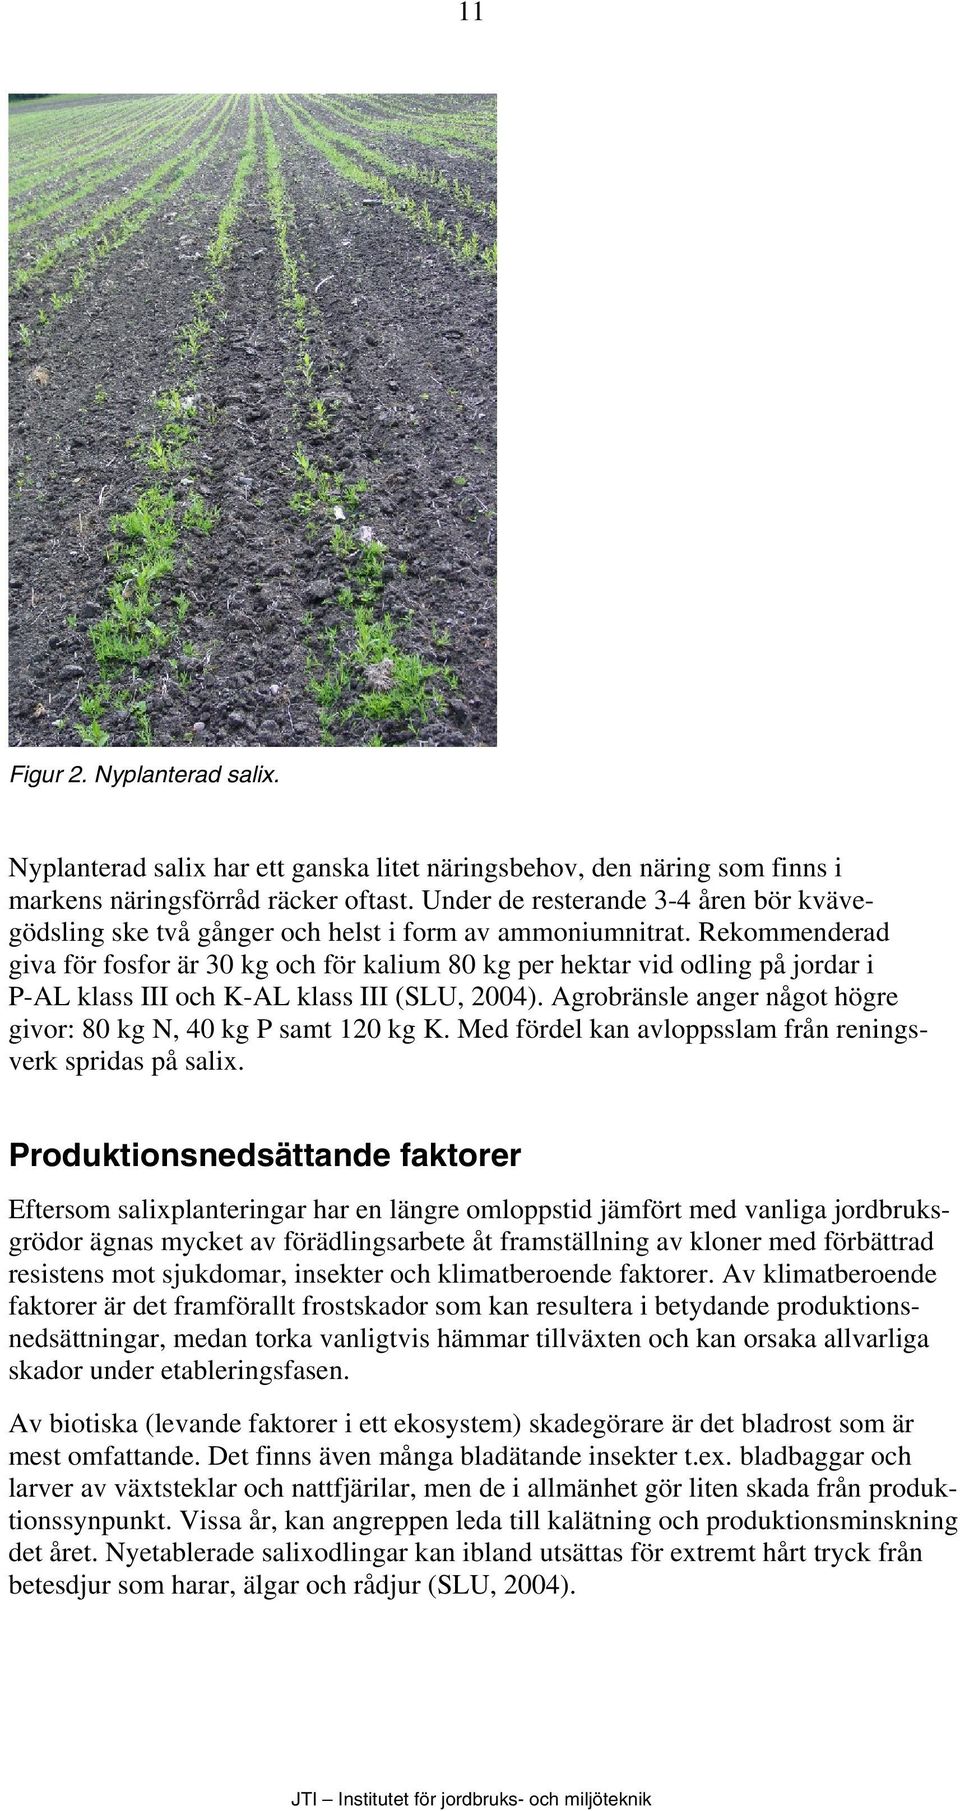 Rekommenderad giva för fosfor är 30 kg och för kalium 80 kg per hektar vid odling på jordar i P-AL klass III och K-AL klass III (SLU, 2004).